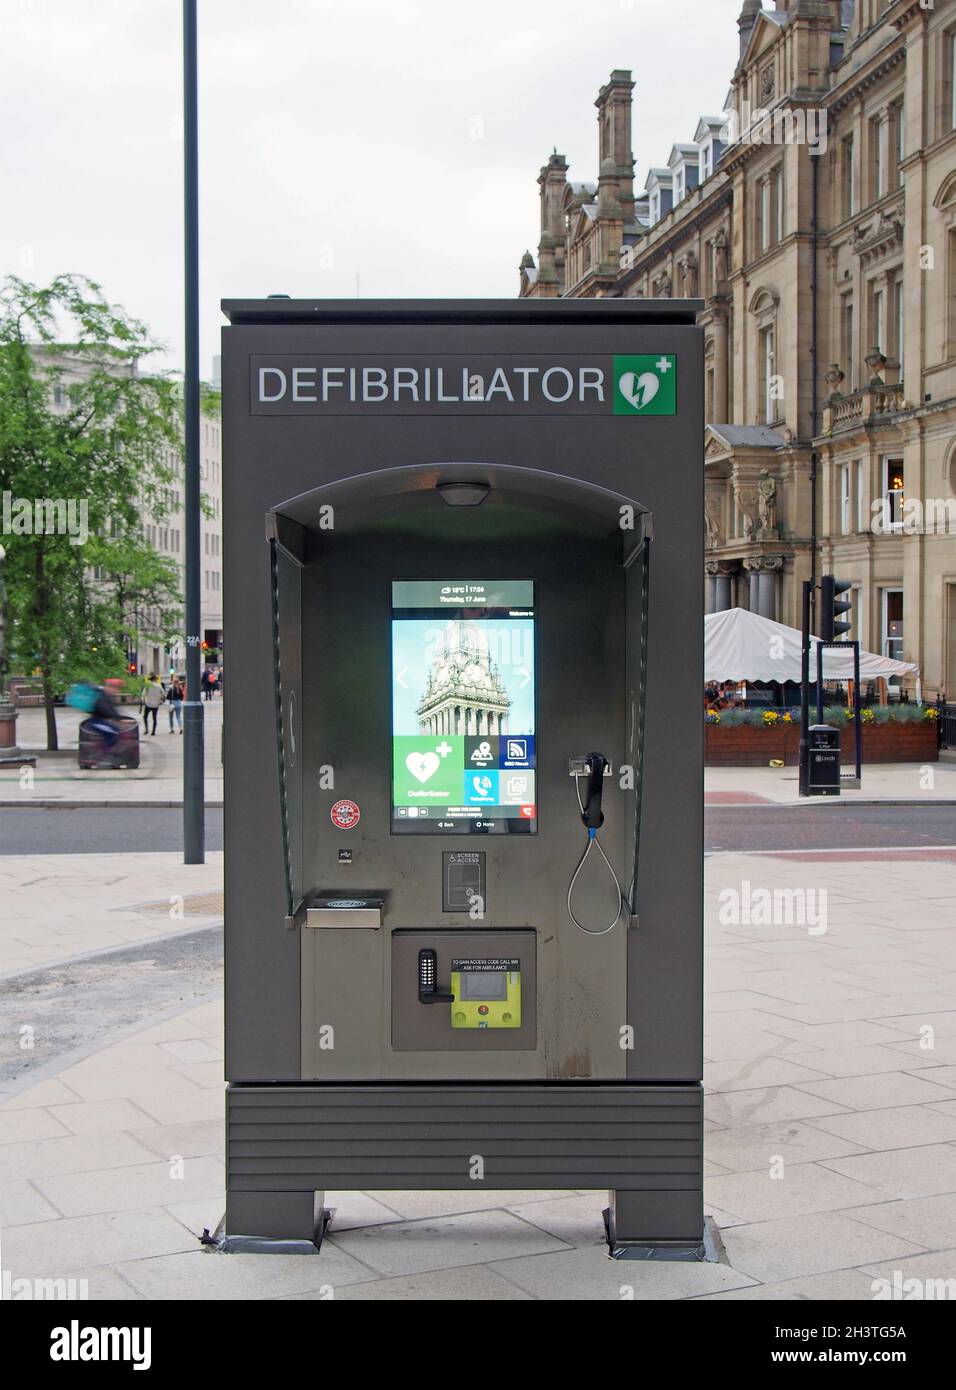 Défibrillateur public d'urgence et point d'information sur la place de la ville de Leeds Banque D'Images